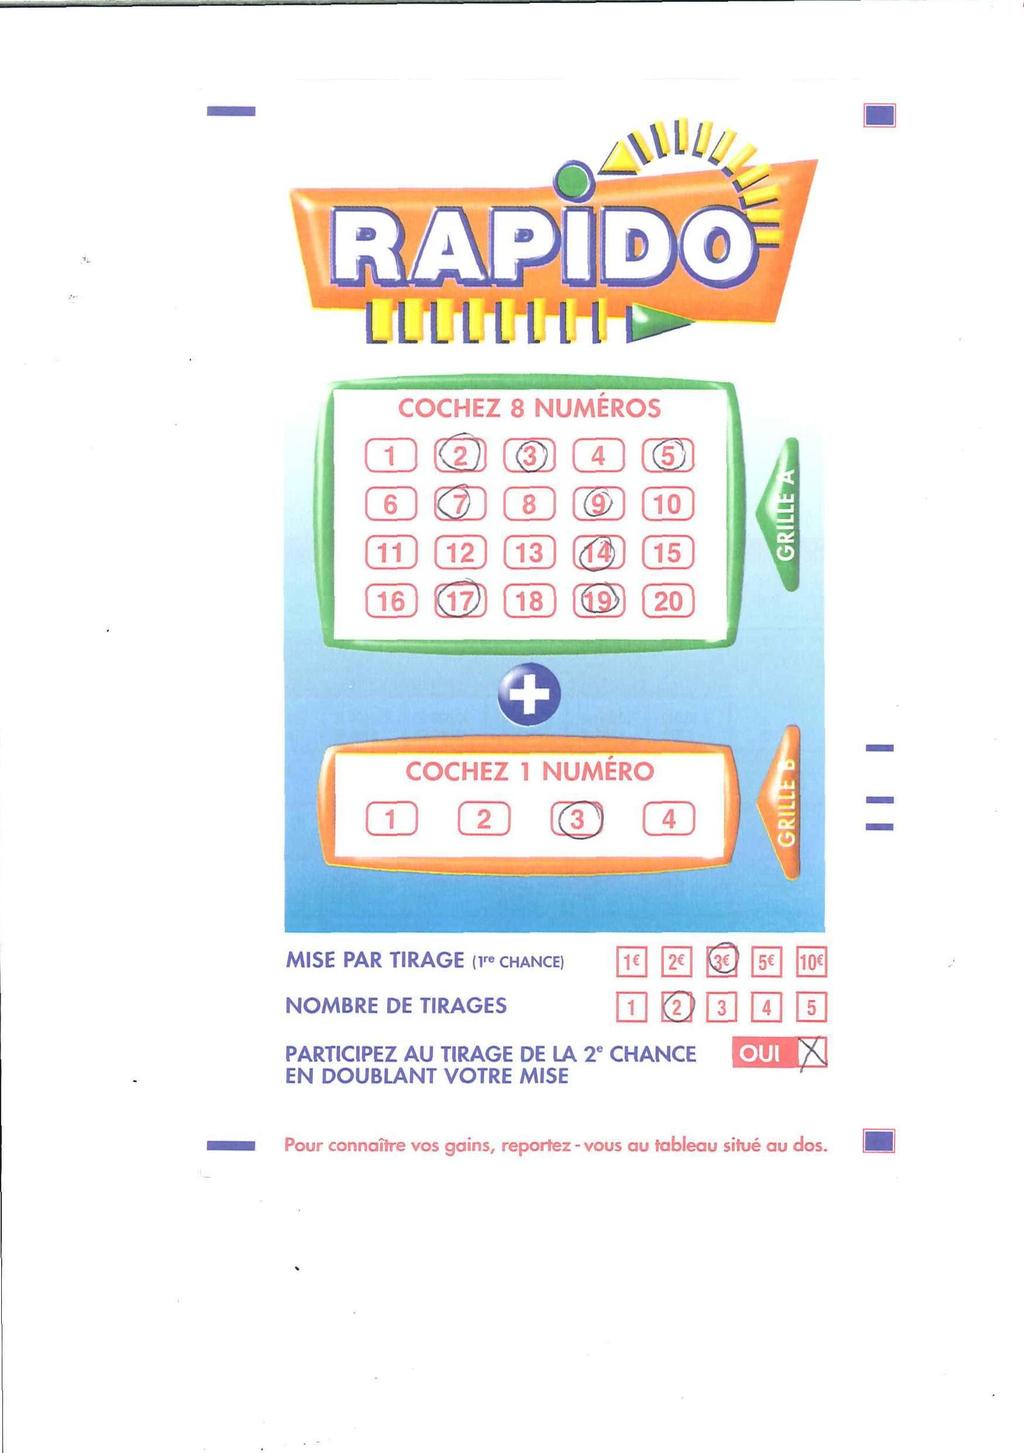 Figuur : Invulformulier bij Rapido de goed gegokte getallen bij ronde A, ook bij ronde B wint, dan krijg je keer je inzet terug Als je na de goed gegokte getallen vervolgens bij ronde B verliest, dan